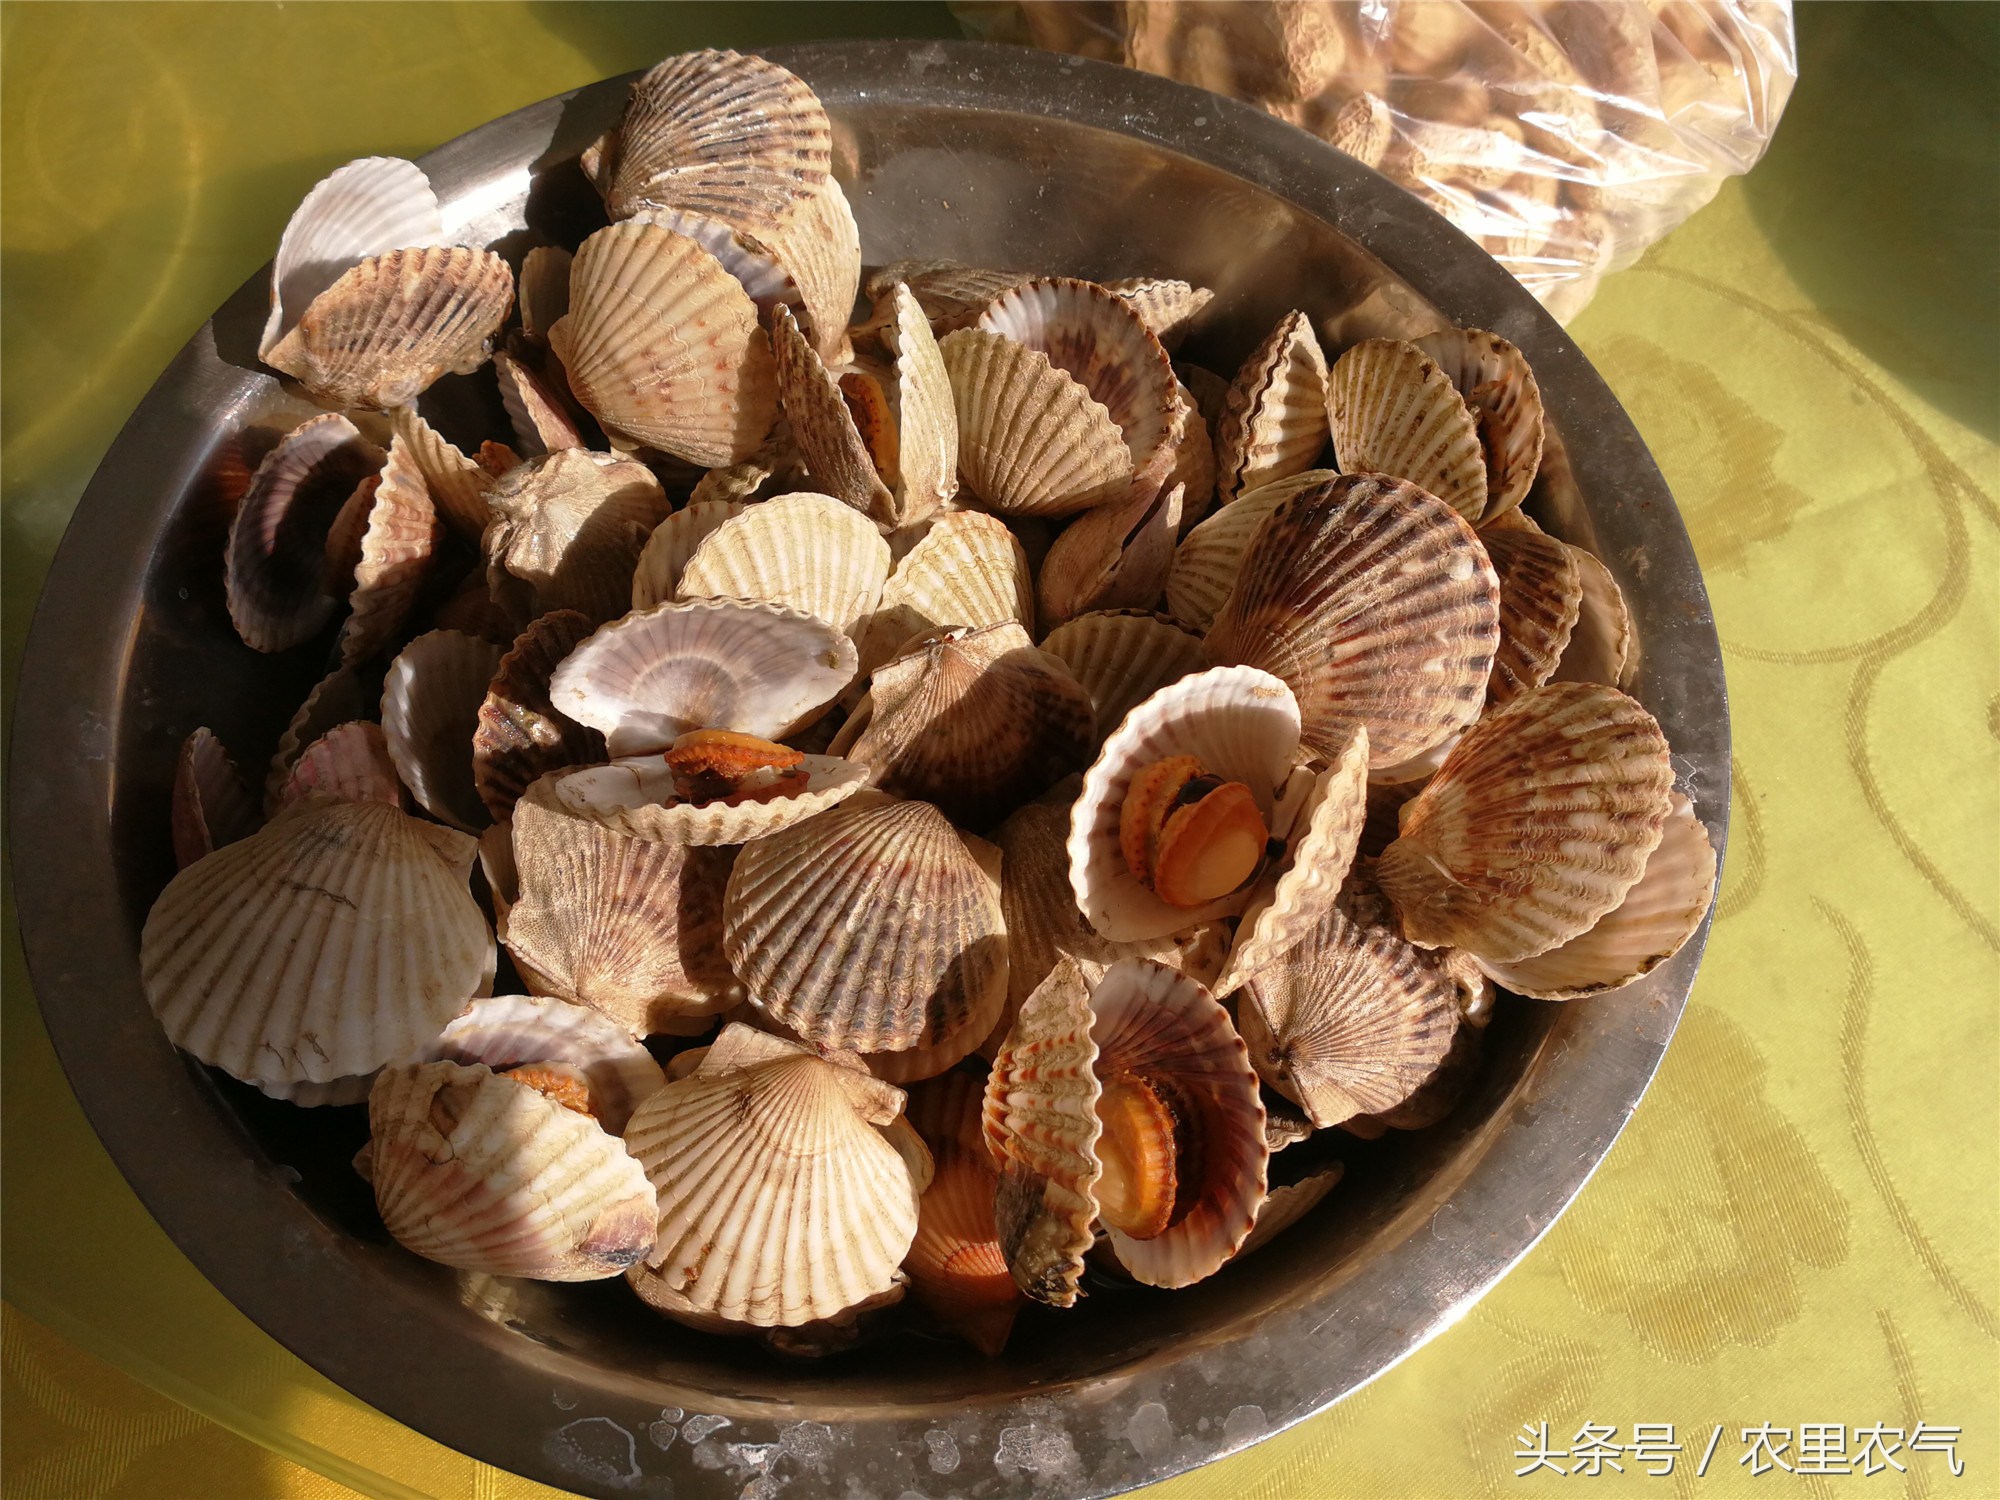 所谓的海味,都是胶东半岛常见的小海鲜.